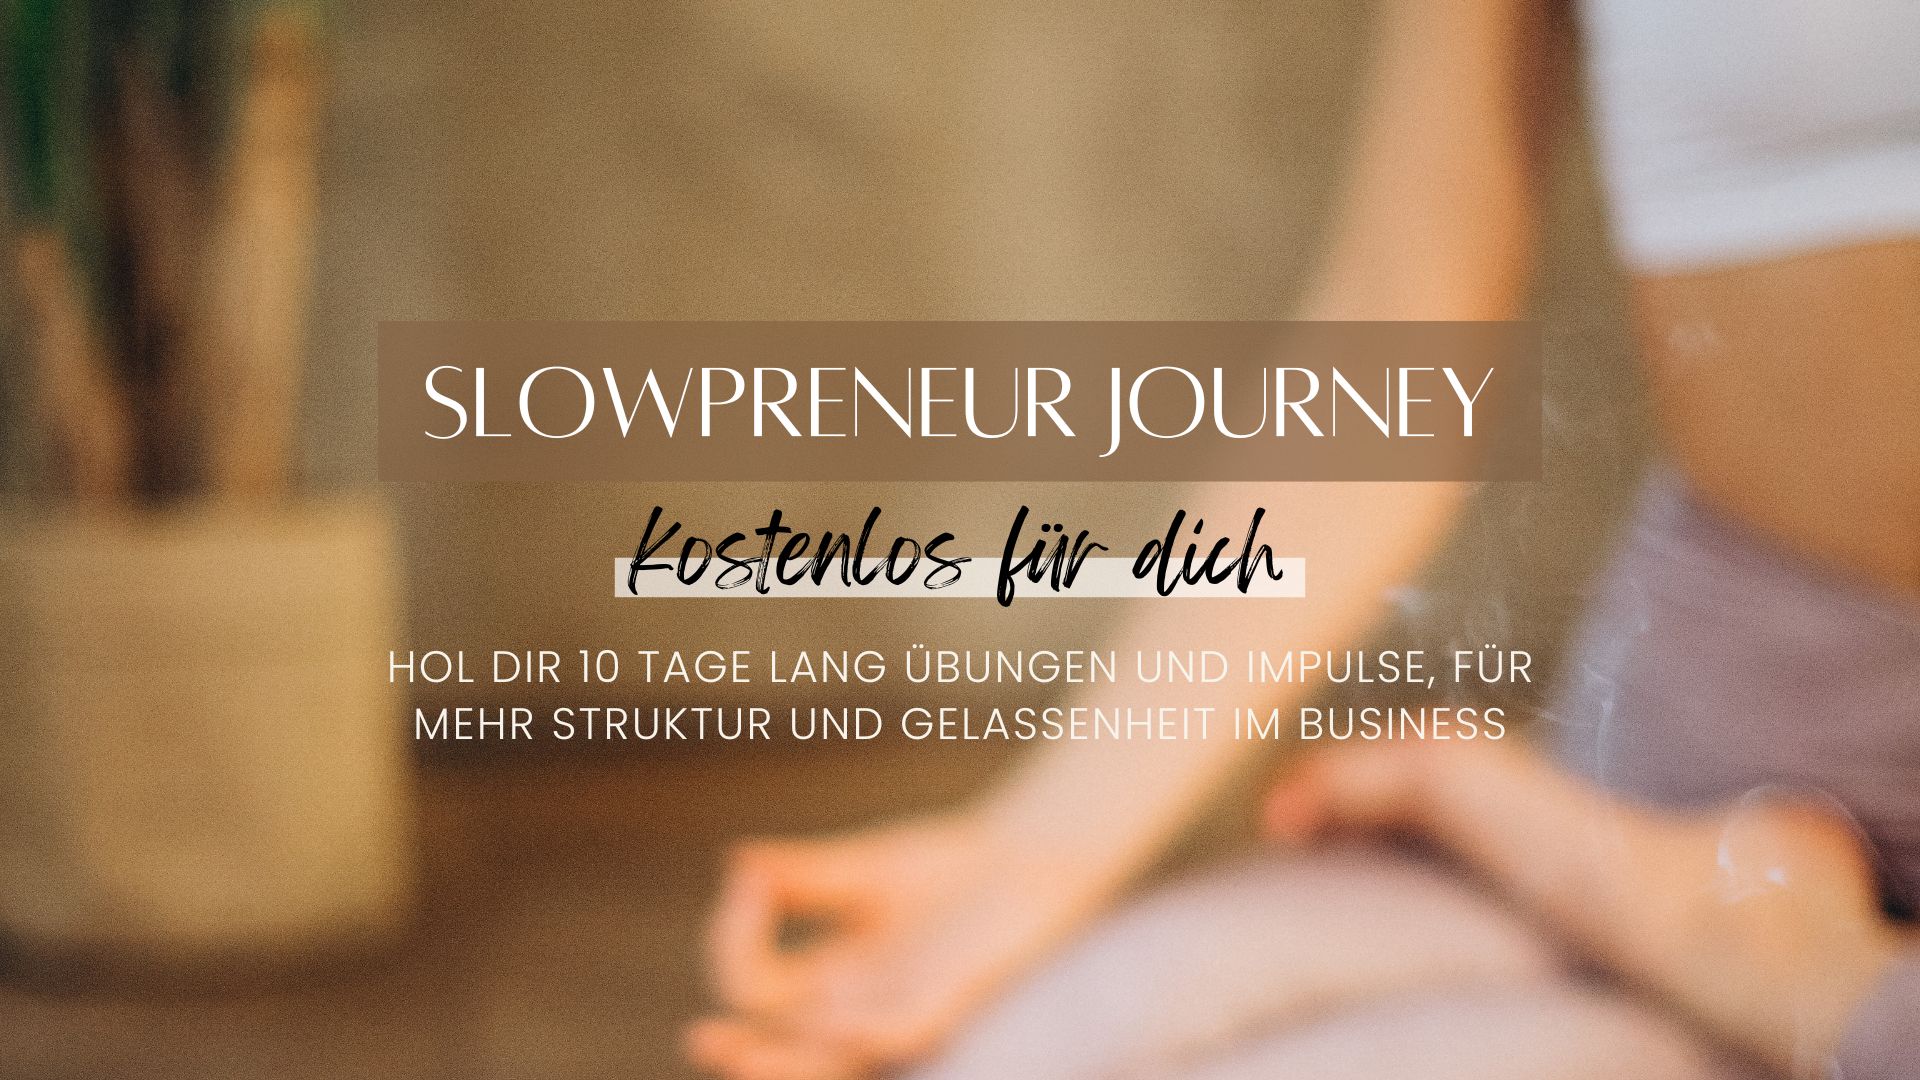 Die Slowpreneur Journey ist ein kostenloses Produkt von mir. Hol dir 10 Tage lang Übungen und Impulse, für mehr Struktur und Gelassenheit im Business. Trage dich ein und starte deine Reise zu einem entspannteren Alltag als Unternehmerin!